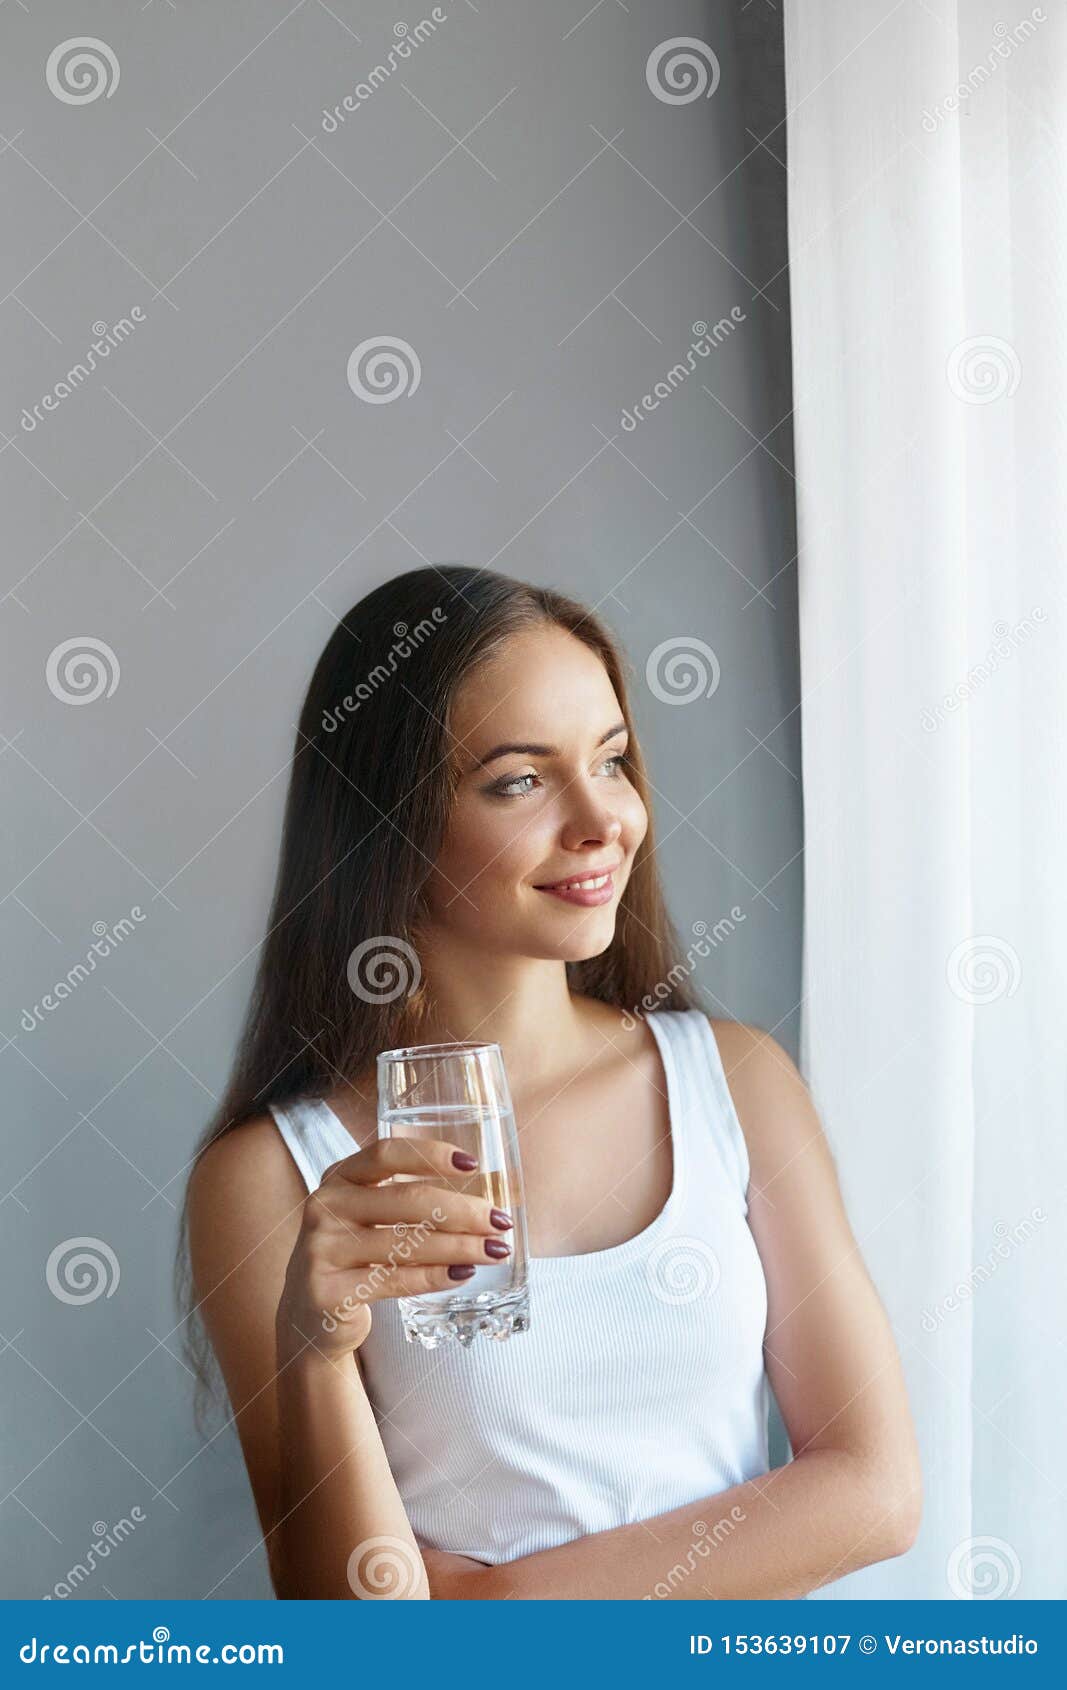 喝水的美女图片素材-编号26559205-图行天下